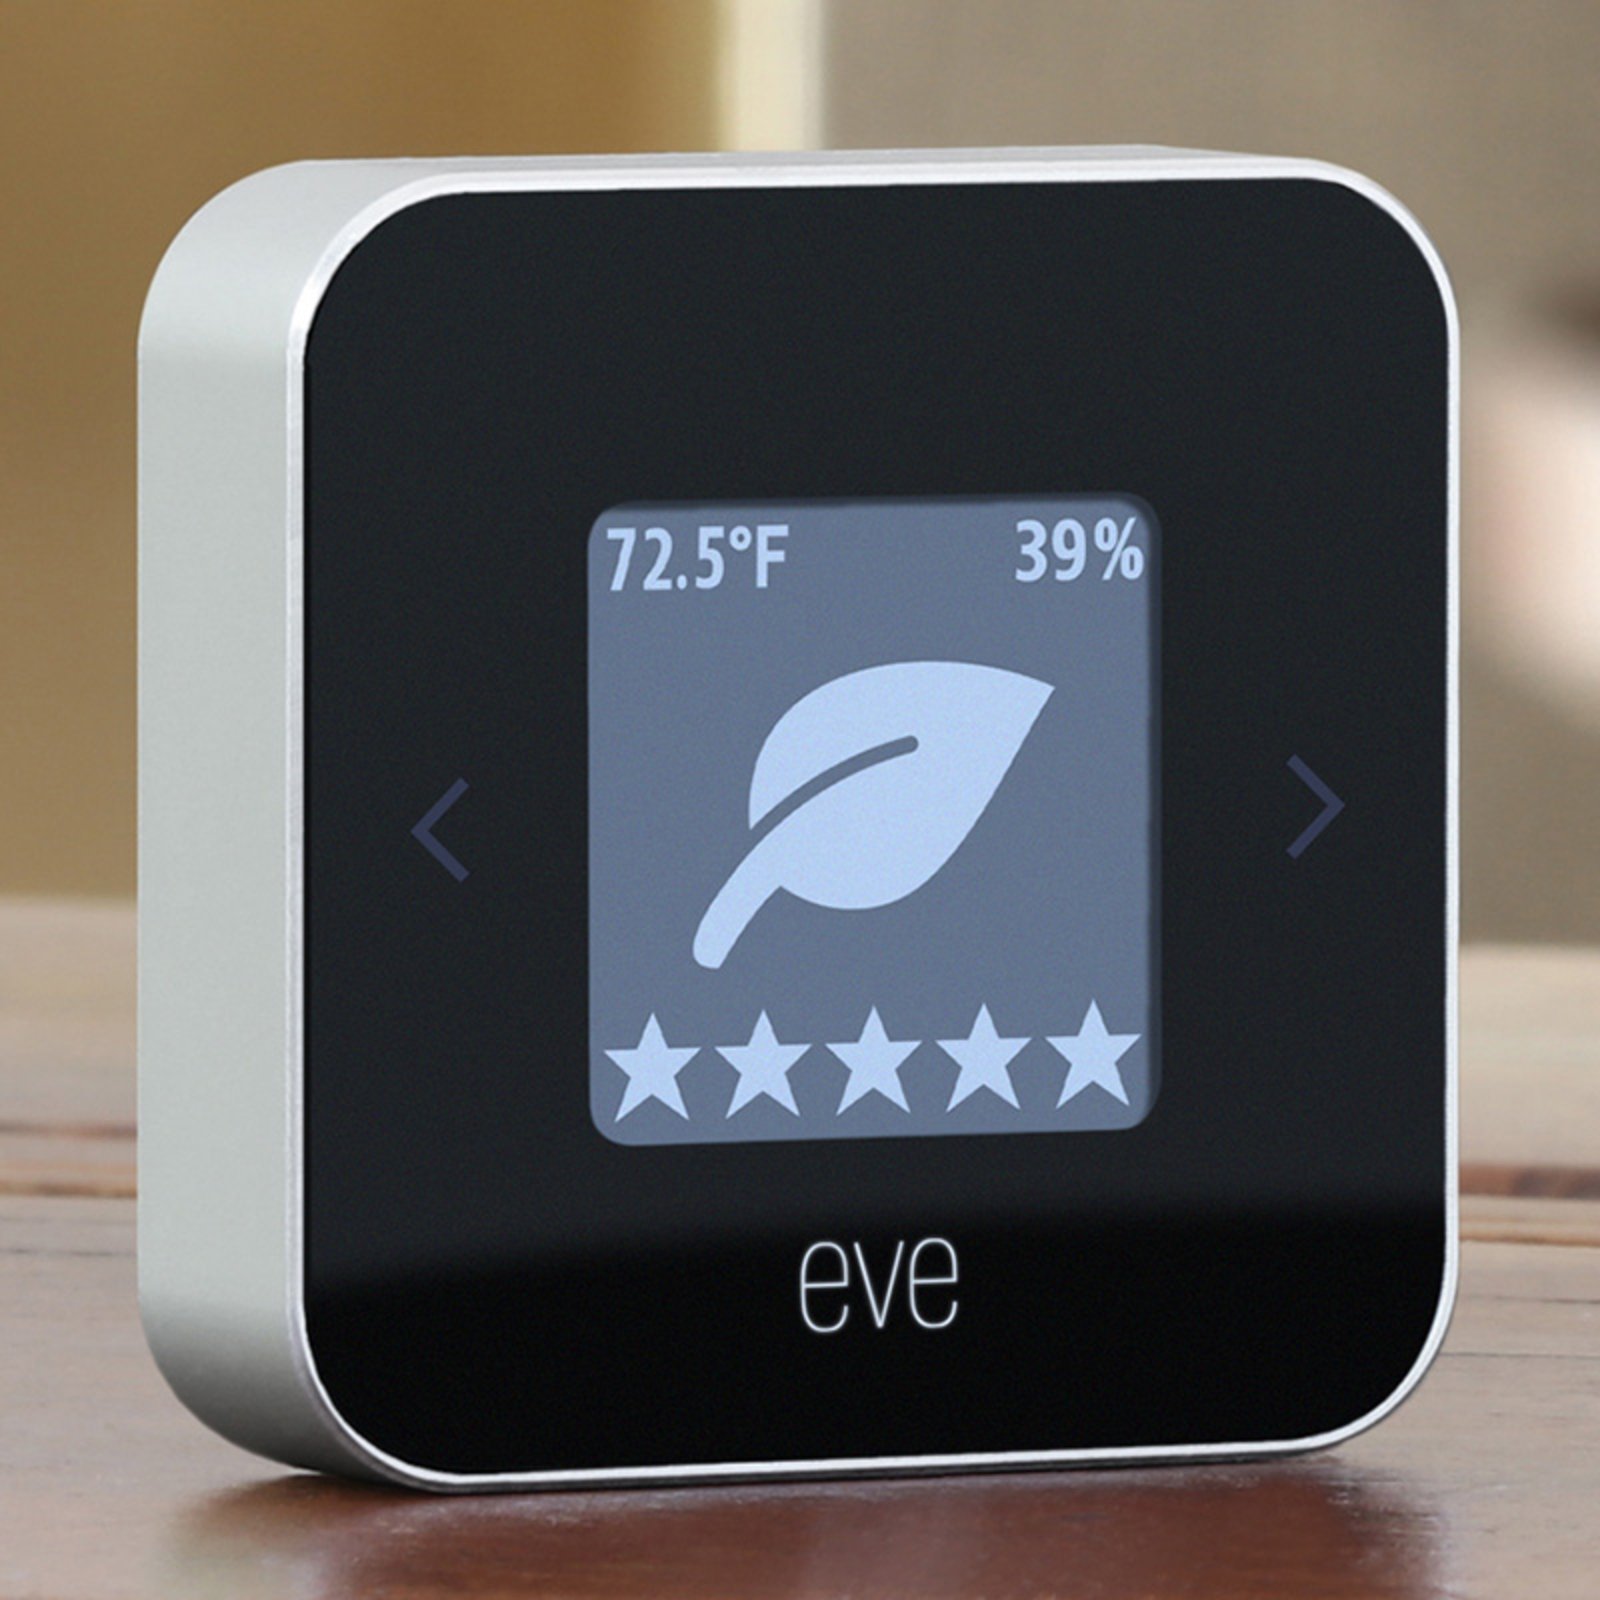 Eve Room moniteur de température et d’air